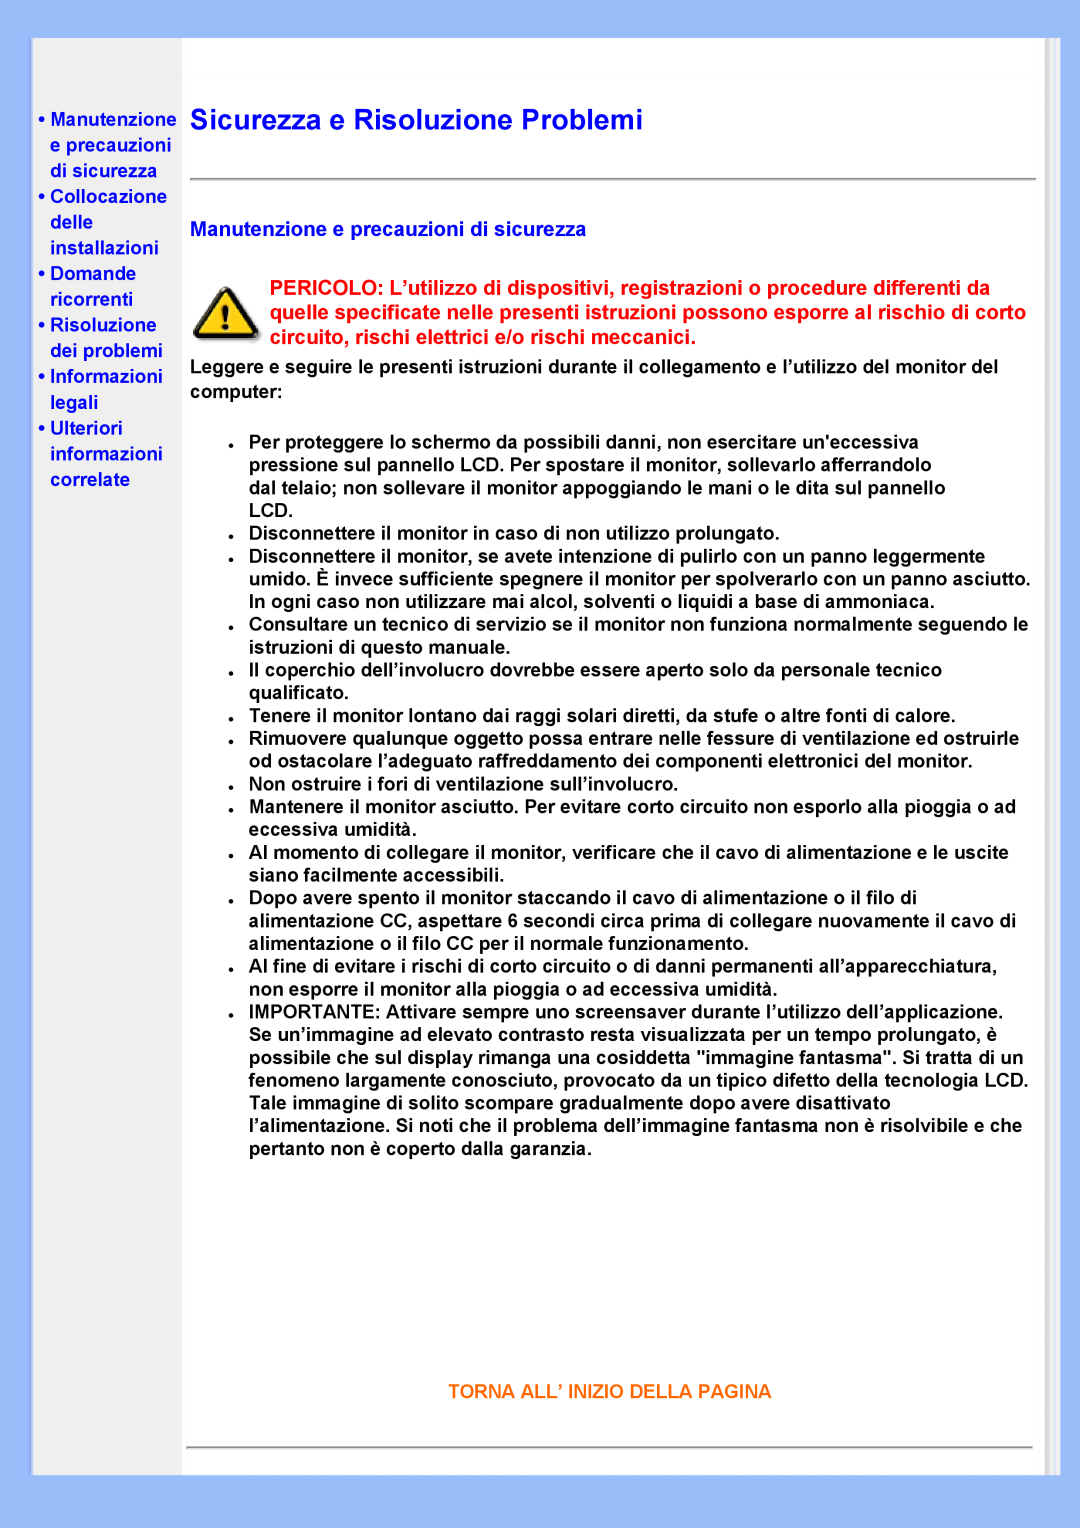 Philips 220VW8 user manual Sicurezza e Risoluzione Problemi, Manutenzione e precauzioni di sicurezza, •Domande ricorrenti 